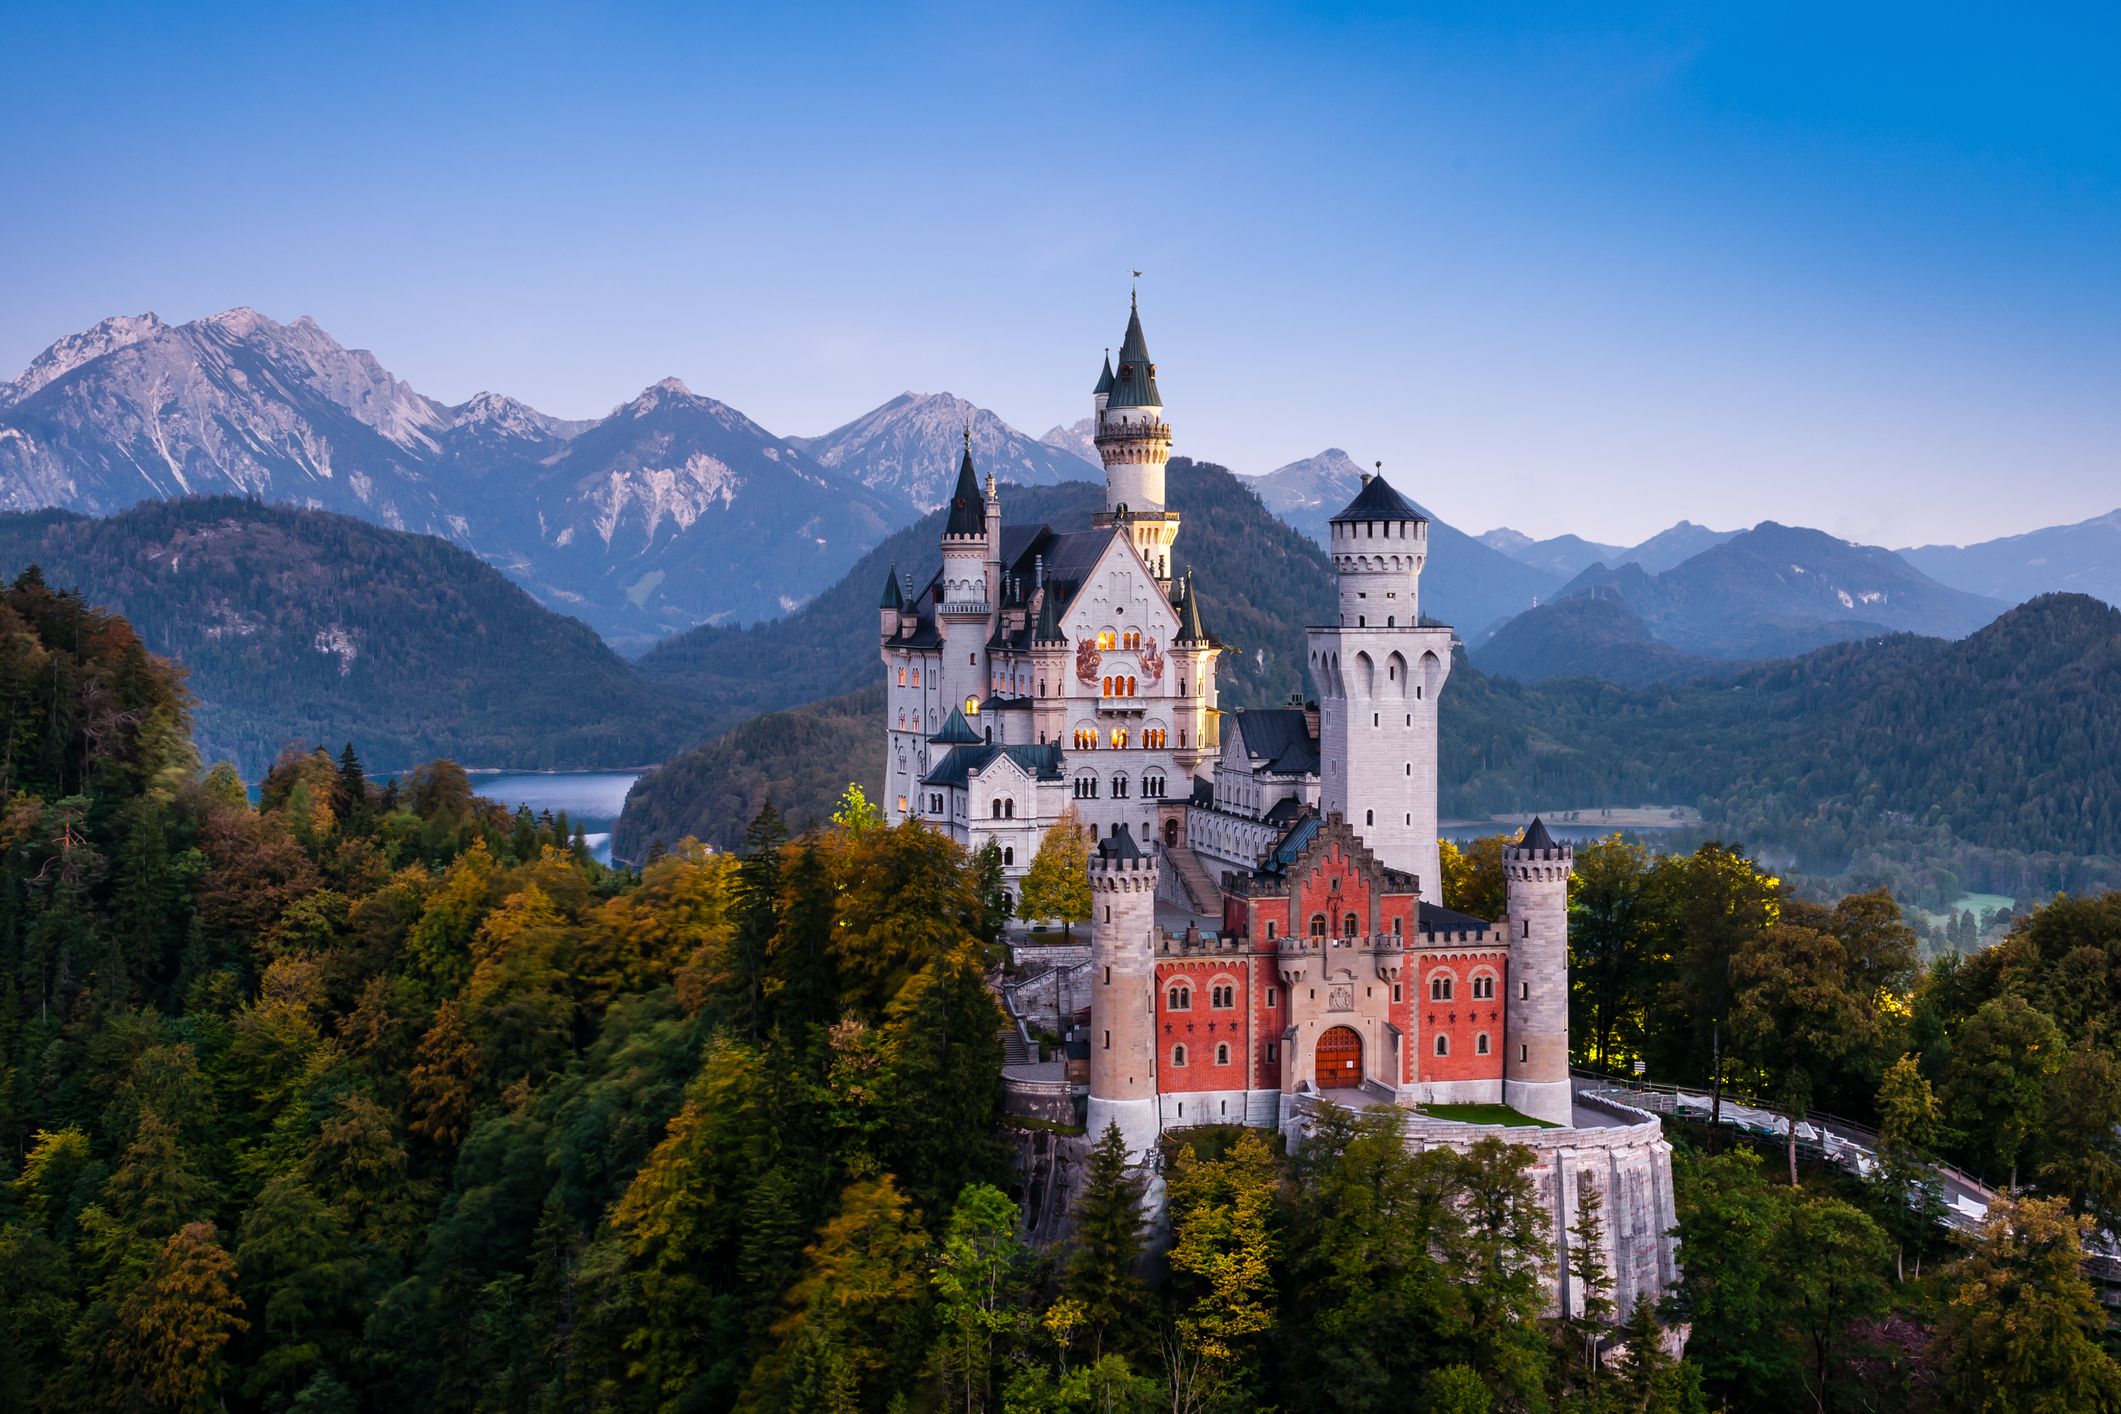 Fairytale Neuschwanstein Castle in Germany